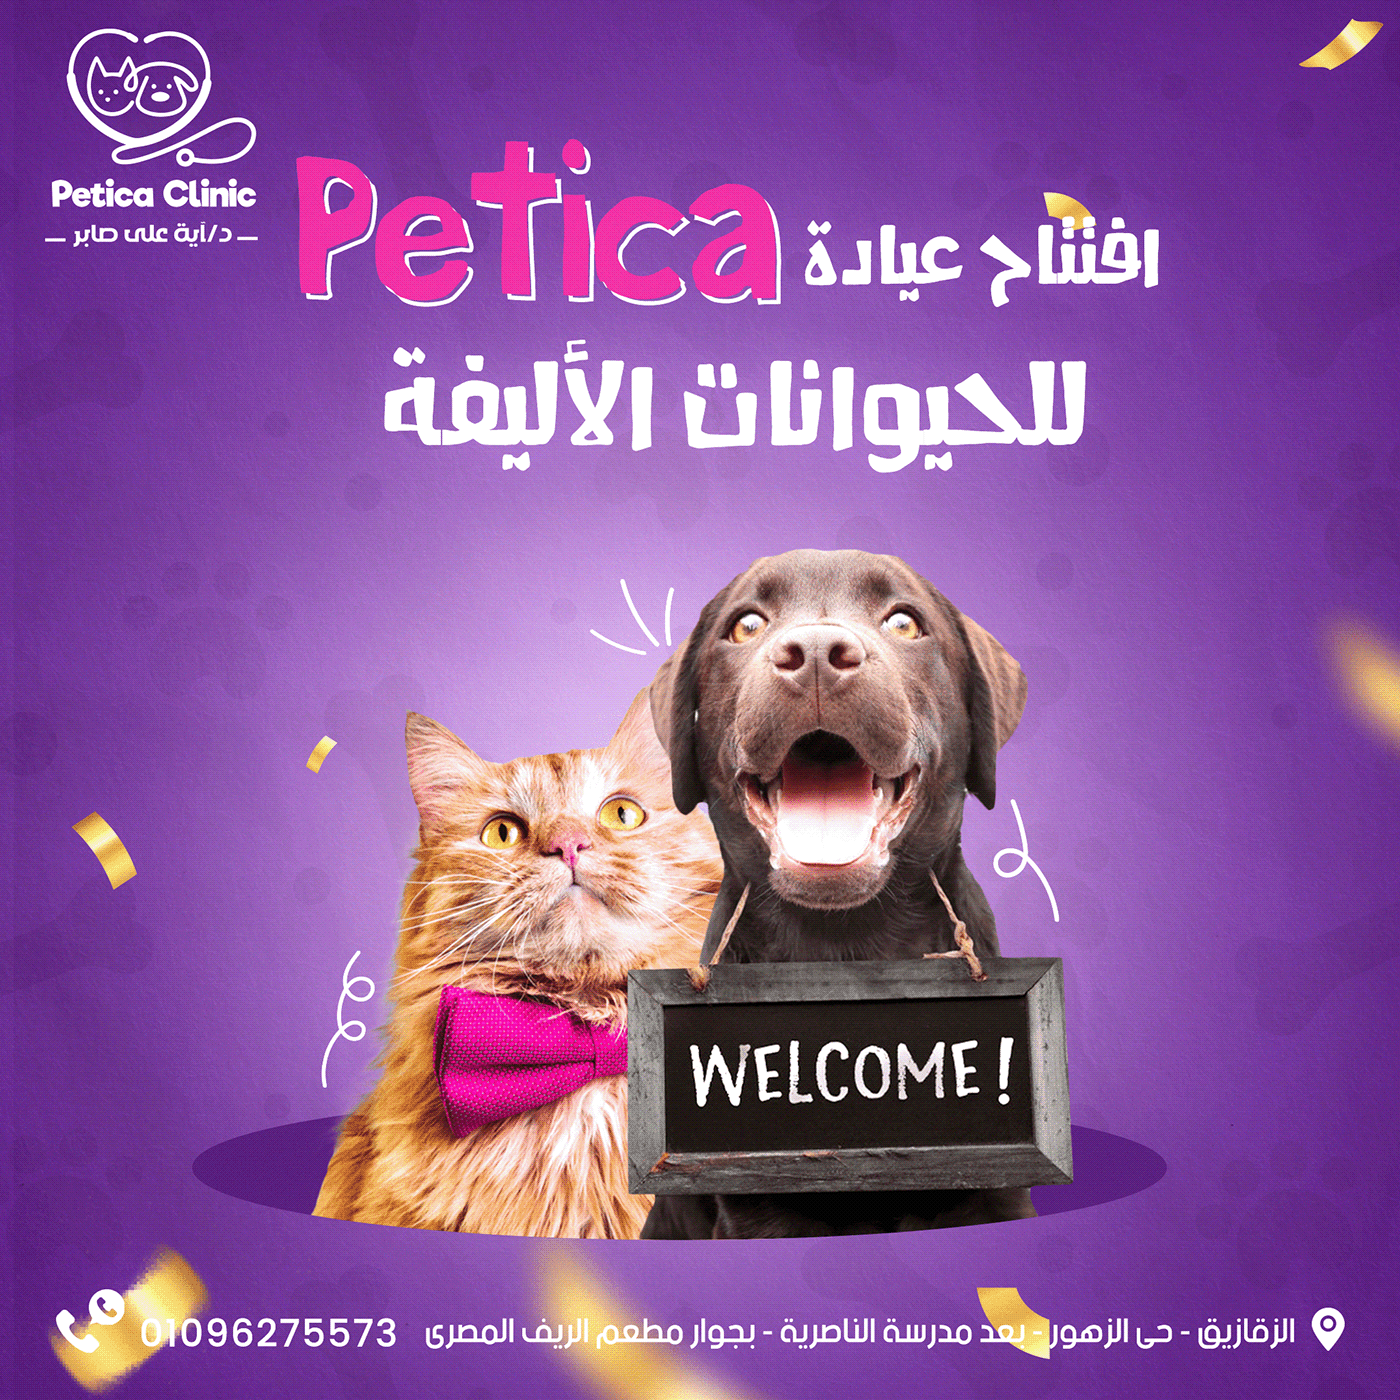 Advertising  Cat clinic clinica Pet pets petshop Social media post Socialmedia